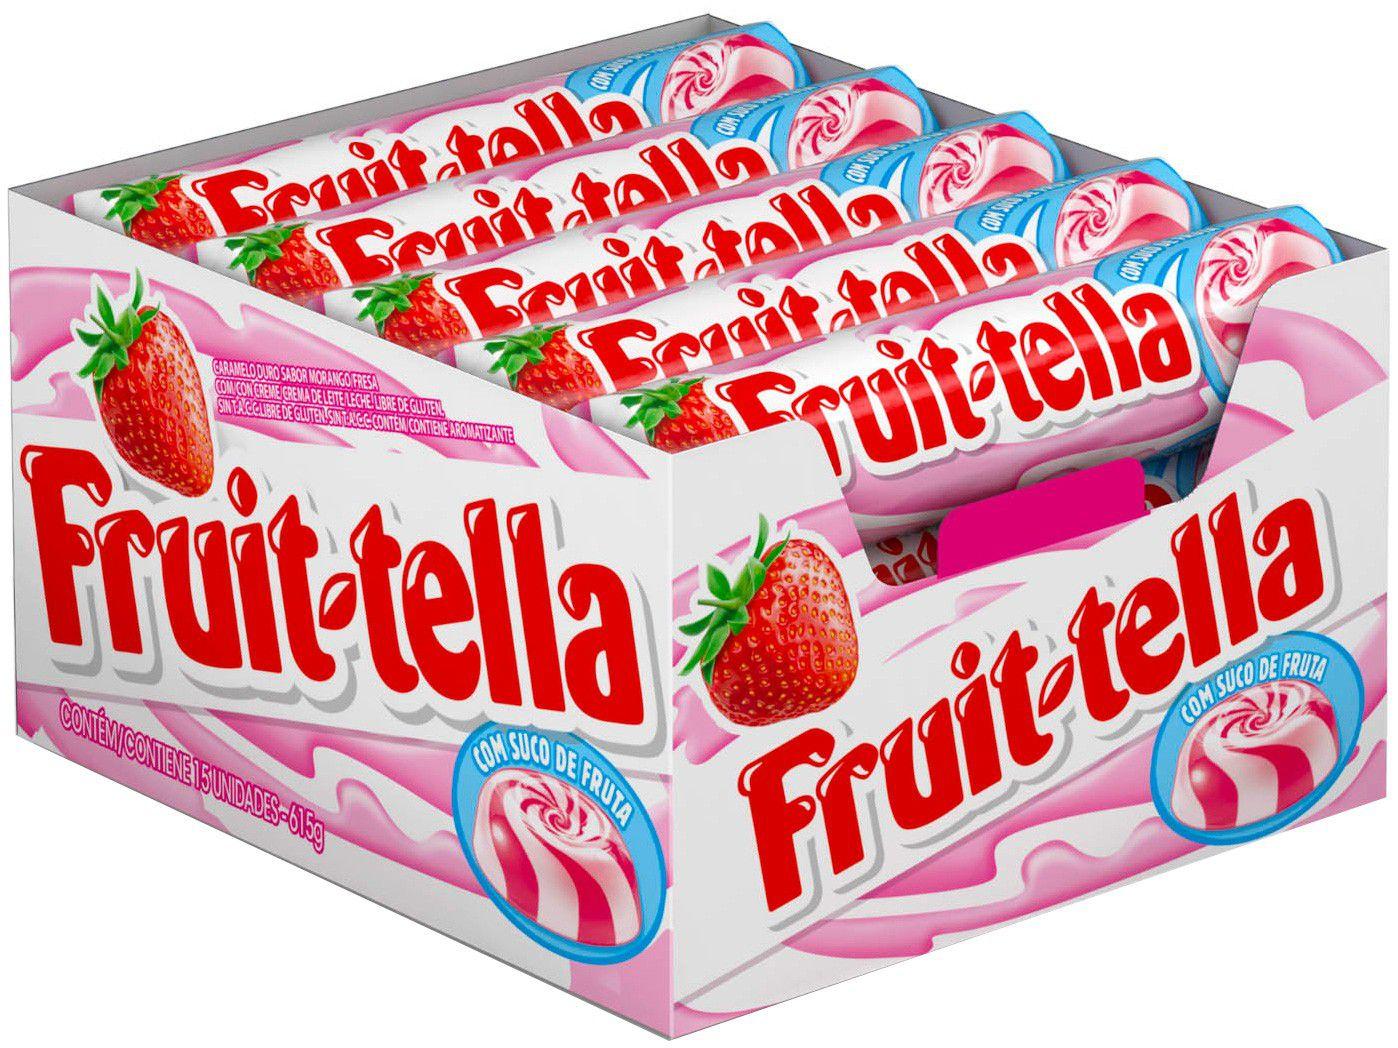 Bala Fruittella Swirl Morango com Creme de Leite - Vitamina C e Suco de Frutas 615g Stick 15 Unidades